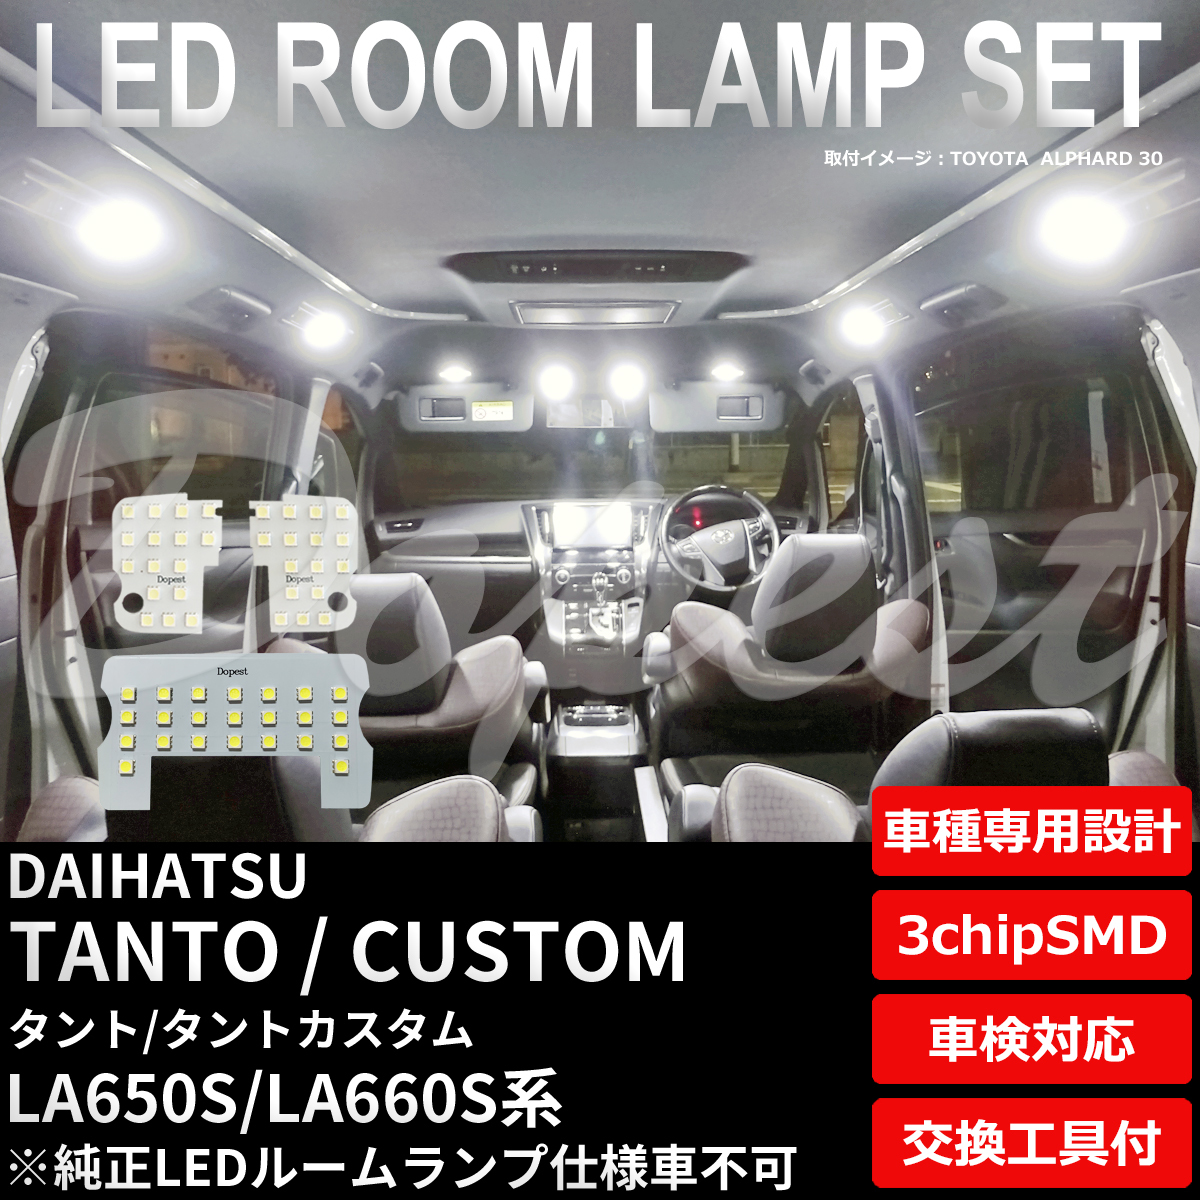 タント/カスタム LEDルームランプセット LA650S/660S系 TYPE1_画像1